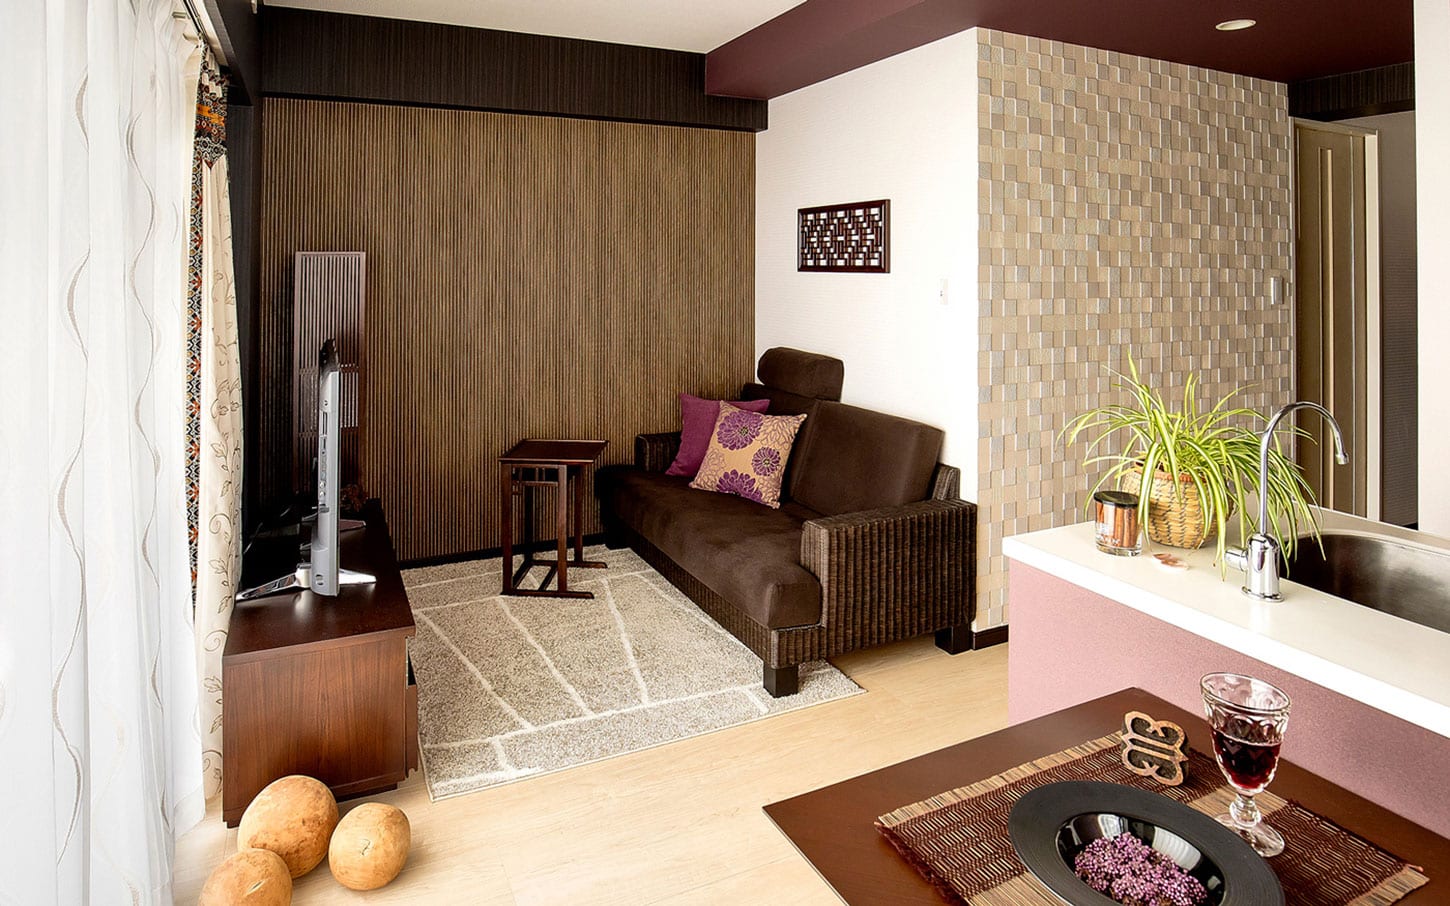 部屋の快適な家具配置とレイアウト例 1ldk 2ldk 3ldk A Flat